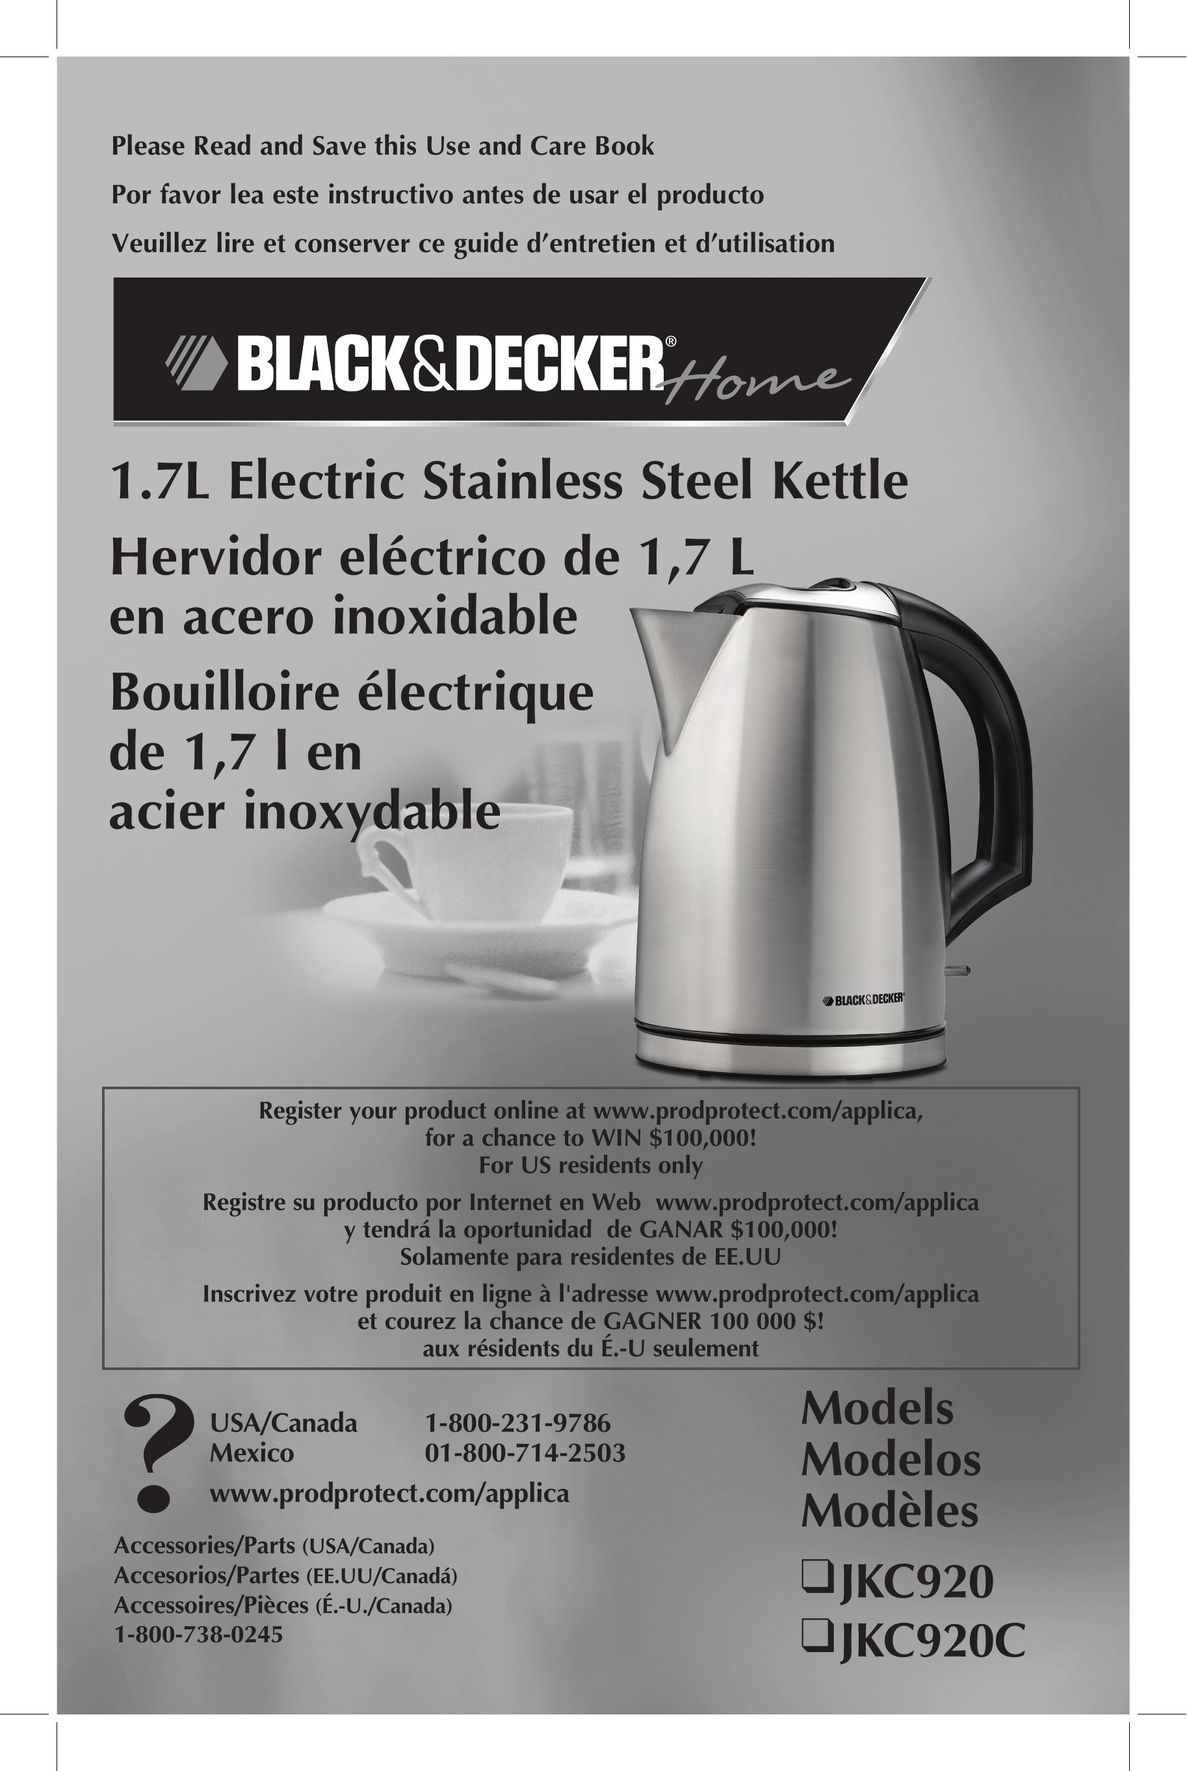 Black & Decker JKC920 Hot Beverage Maker User Manual